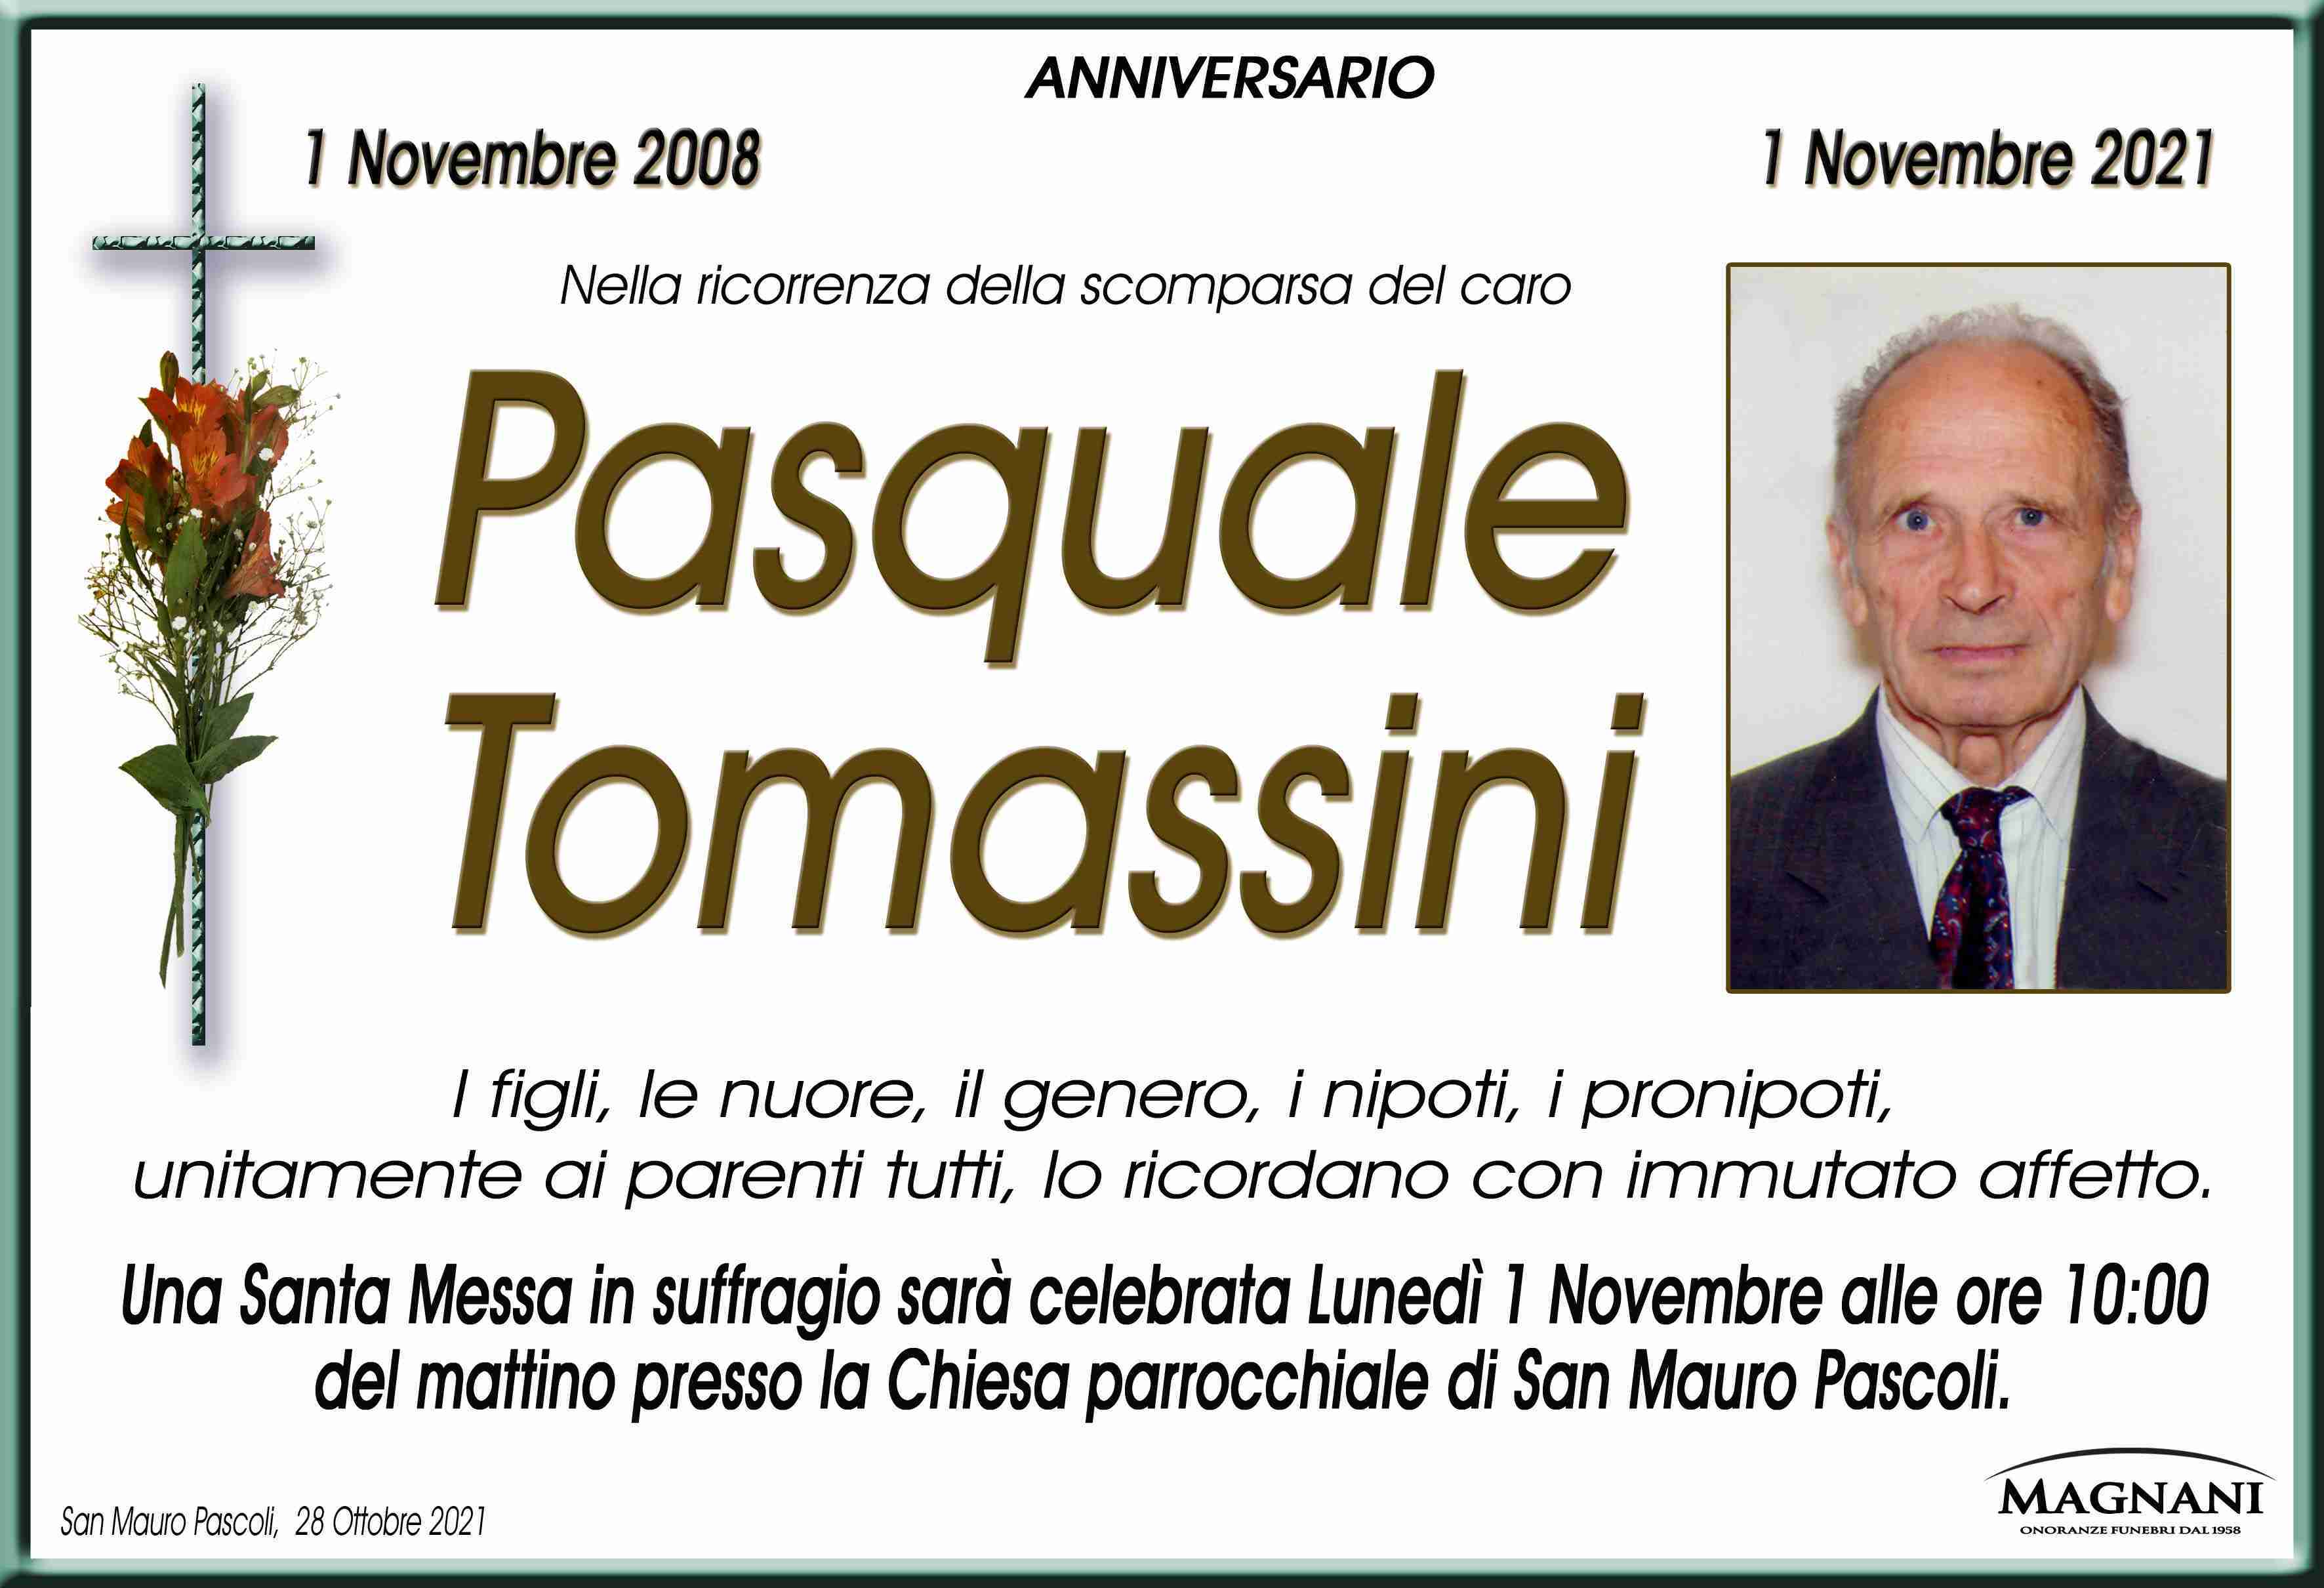 Pasquale Tomassini